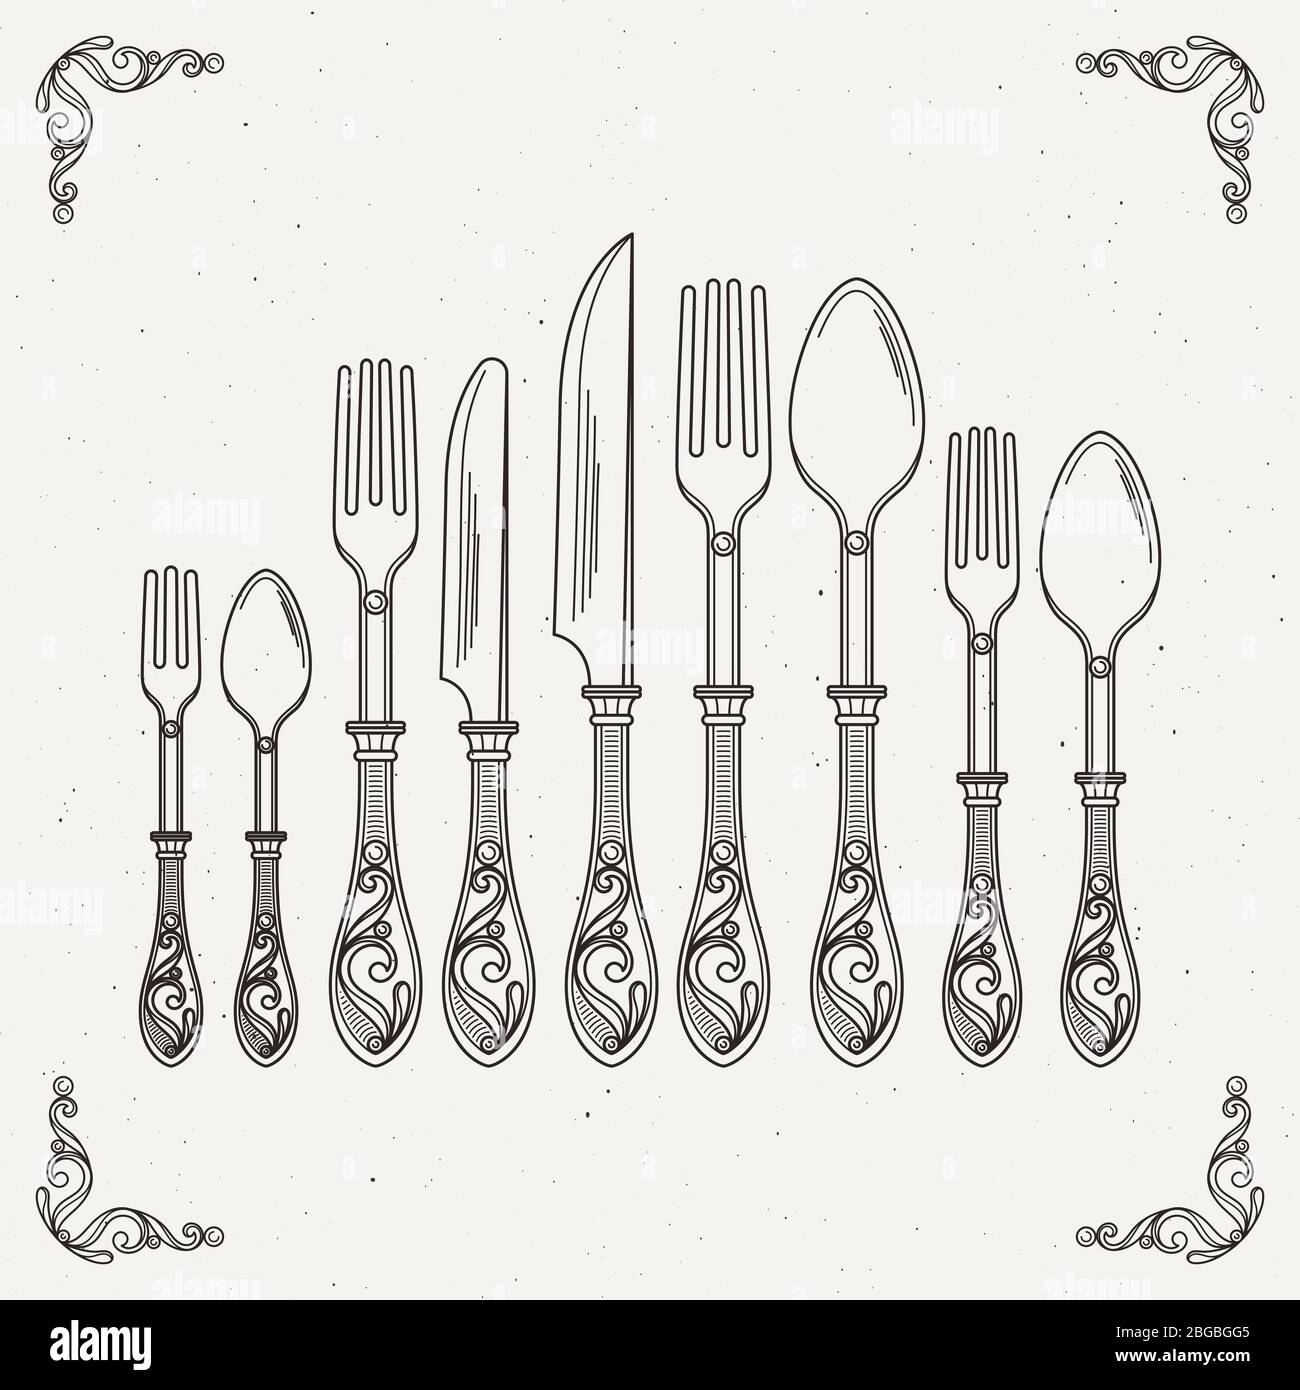 Skizzierte Illustration von Retro-Geschirr. Vektorbilder von Löffel, Gabel und Messer Stock Vektor